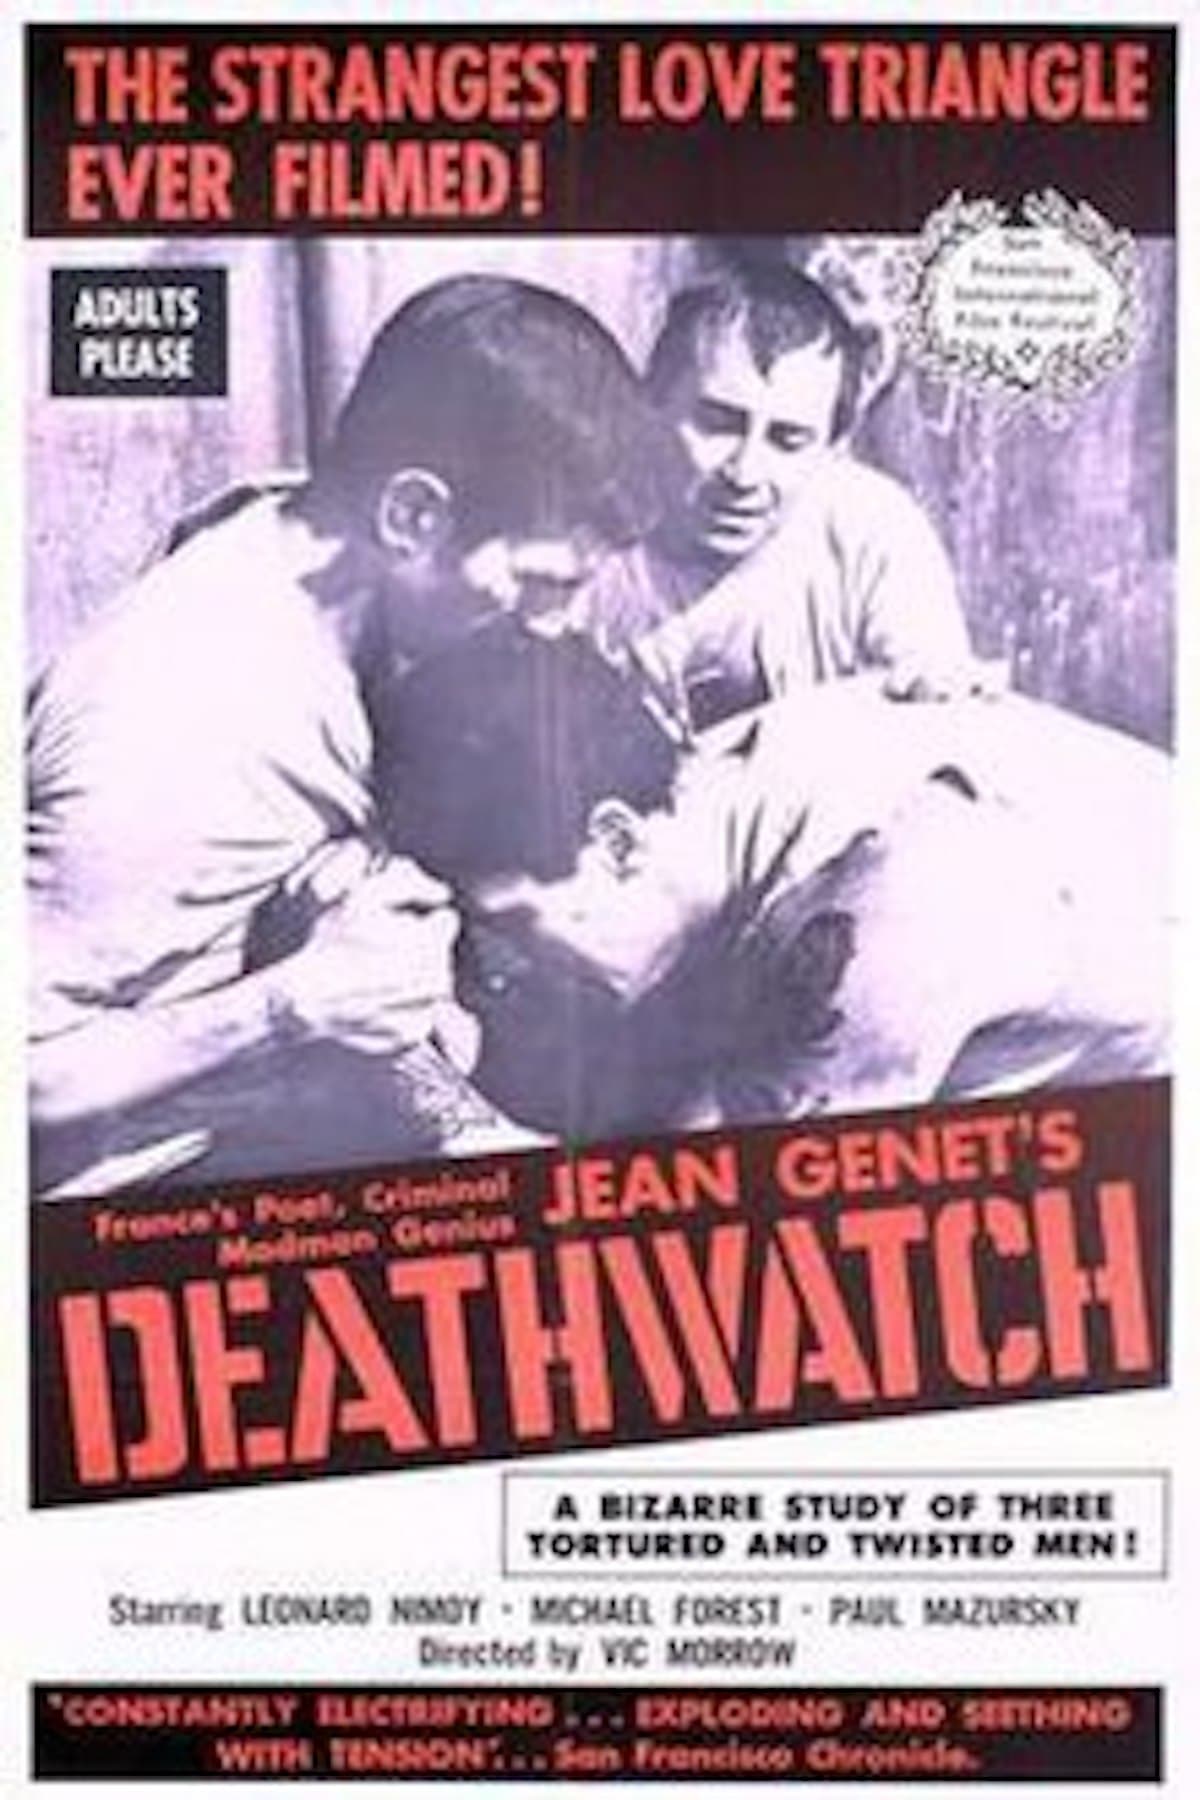 Deathwatch (1966)